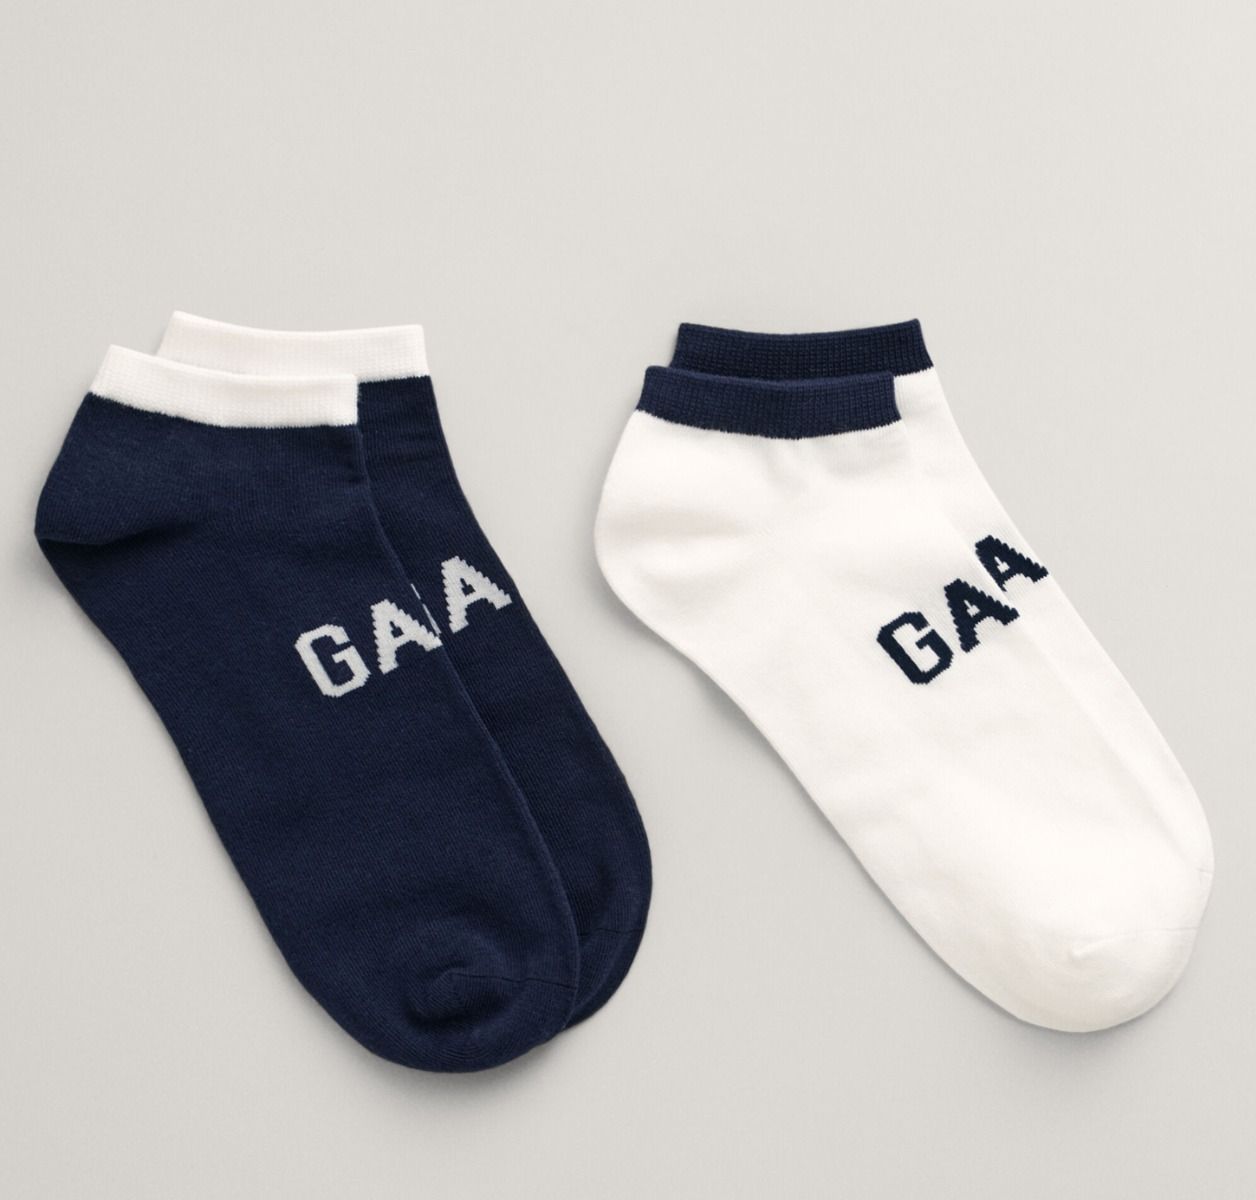 Gant Ανδρικές Κάλτσες 2 Ζεύγη 9960290-433 Σκούρο Μπλέ ΑΝΔΡΑΣ>ΑΞΕΣΟΥΑΡ>ΚΑΛΤΣΕΣ